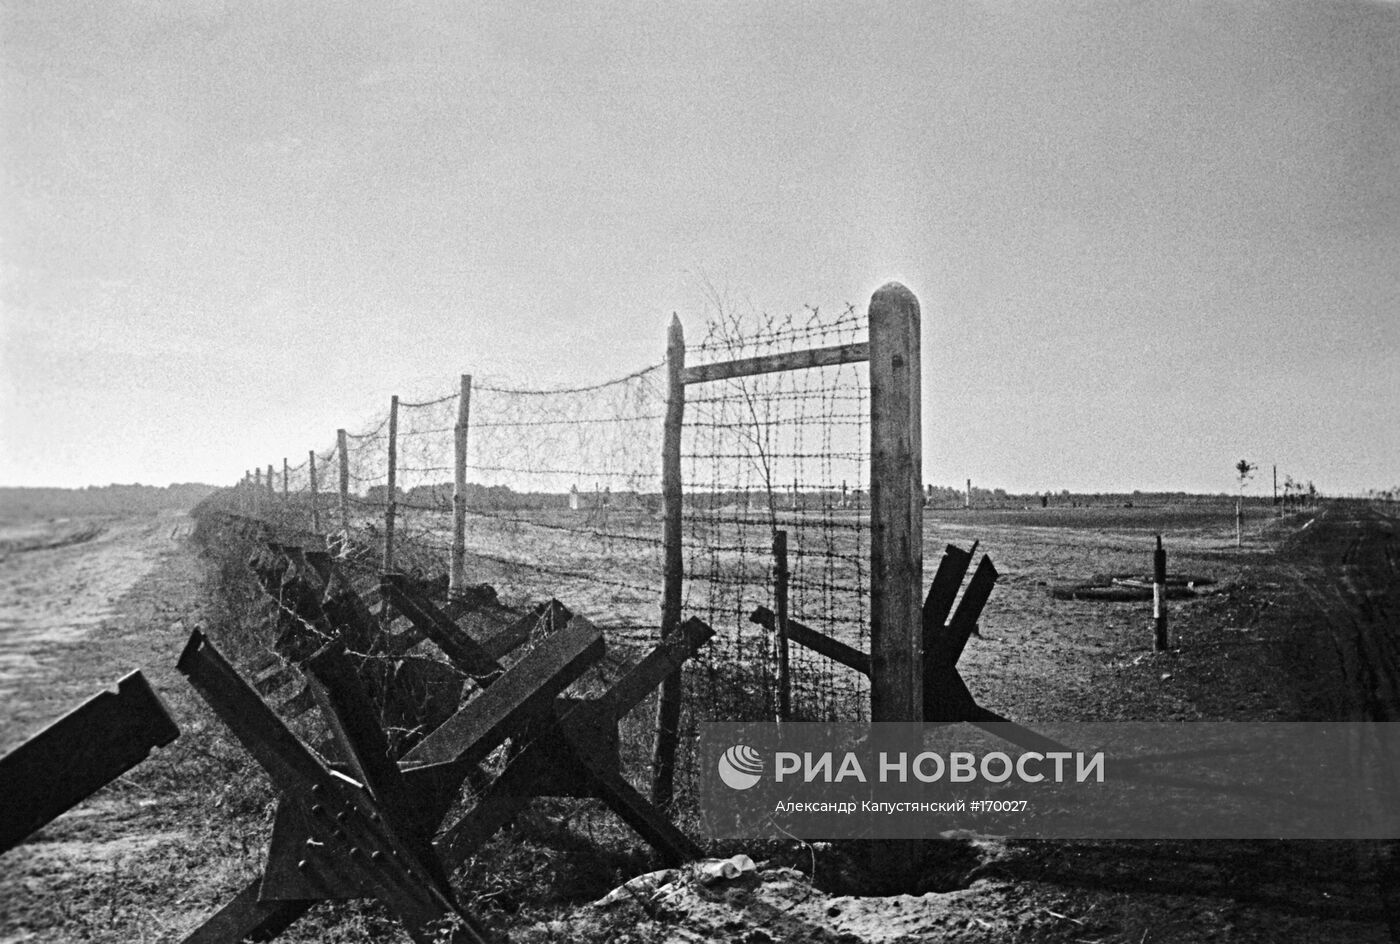 Великая Отечественная война 1941-45 гг.